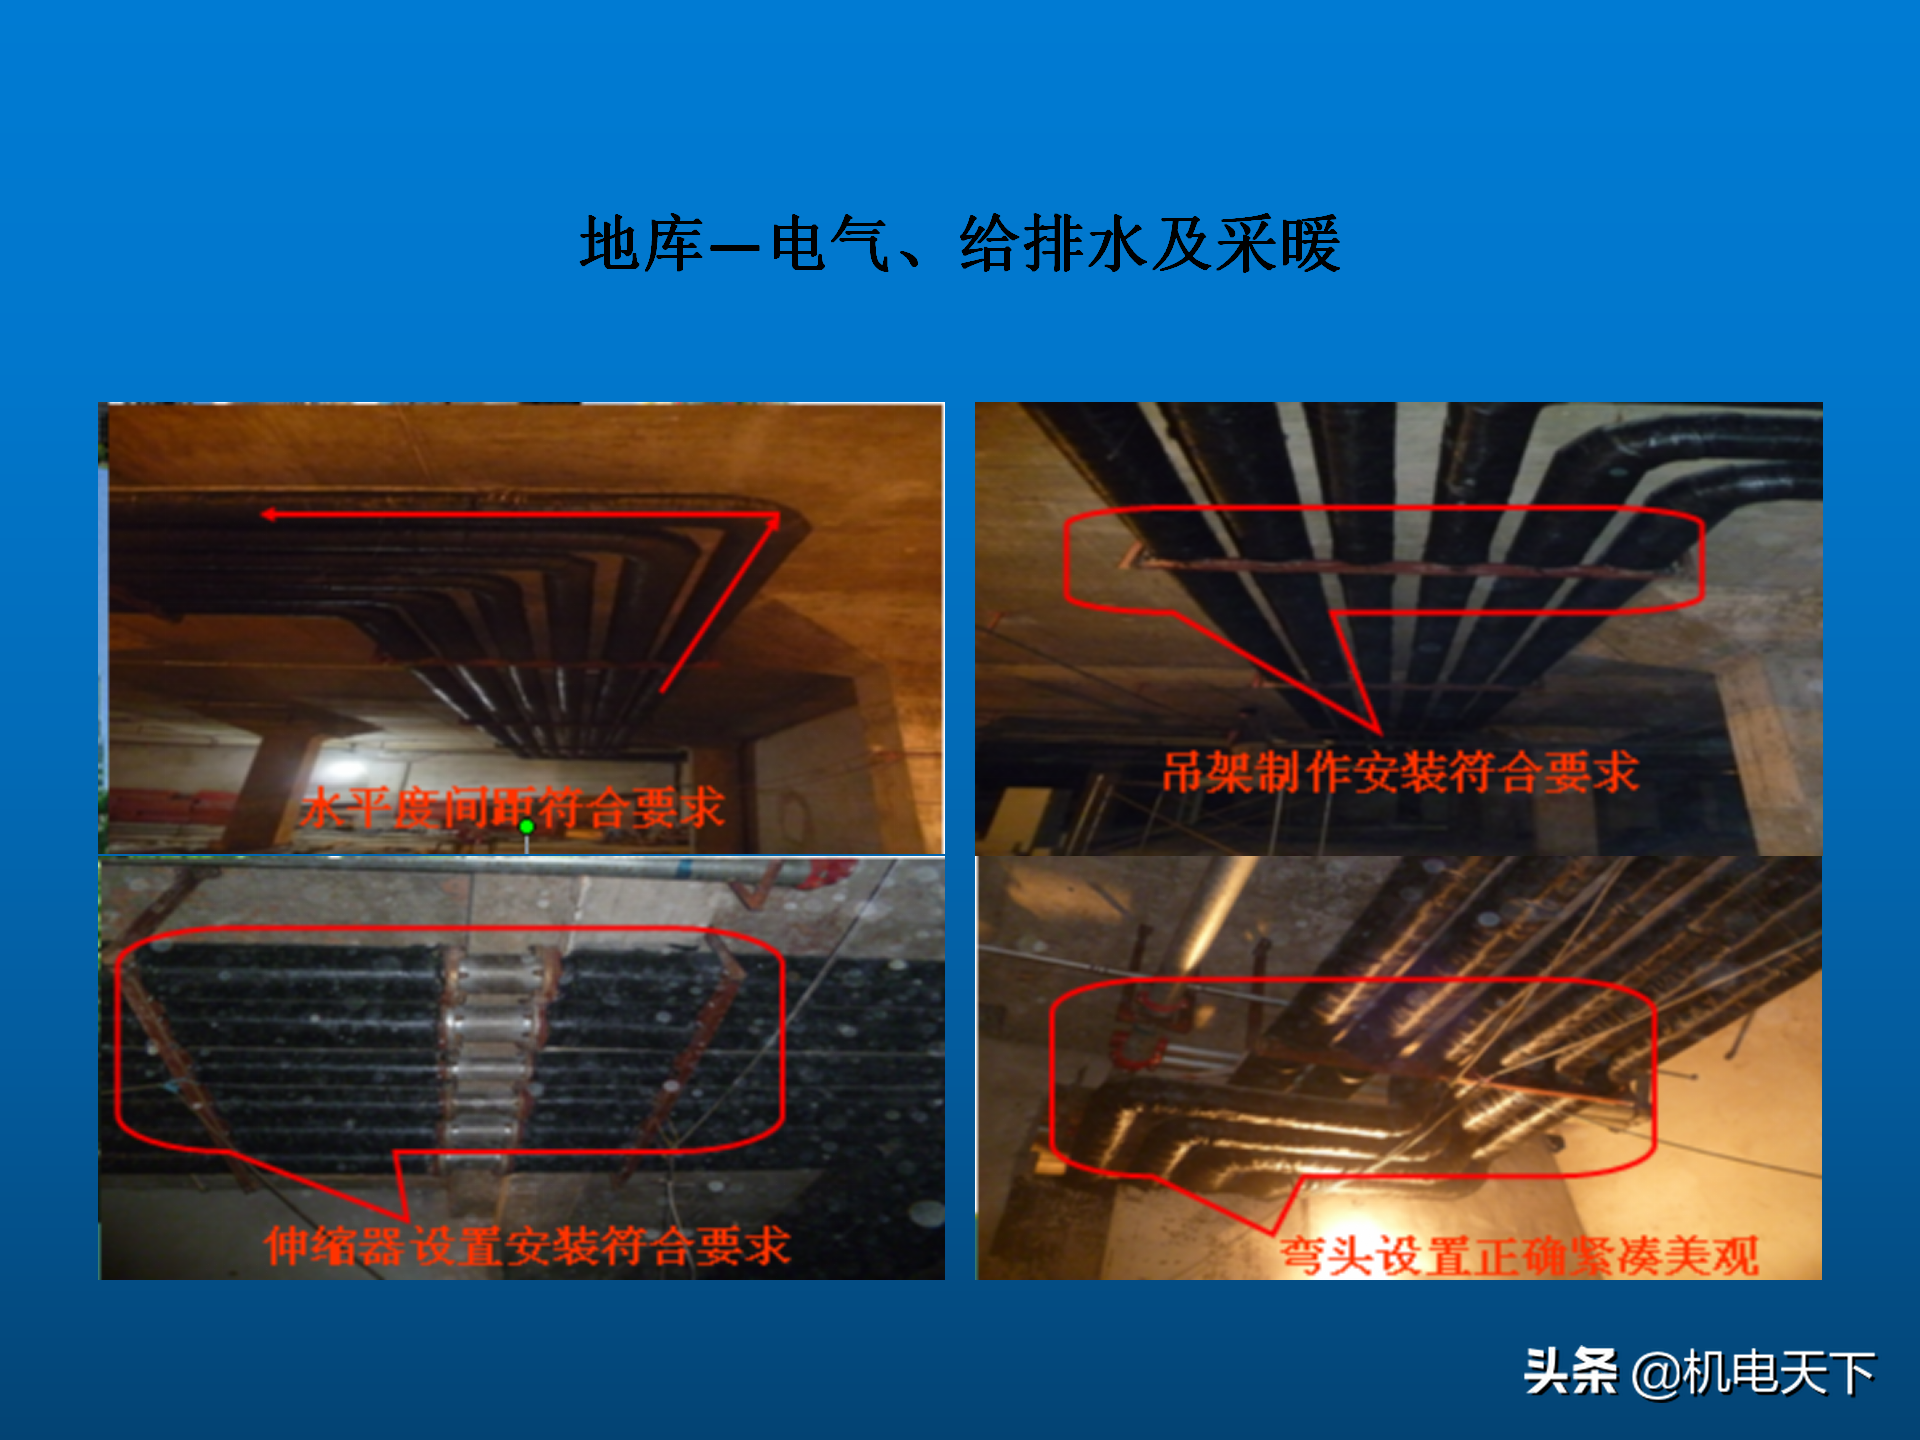 高清图片展示机电安装施工质量通病案例PPT